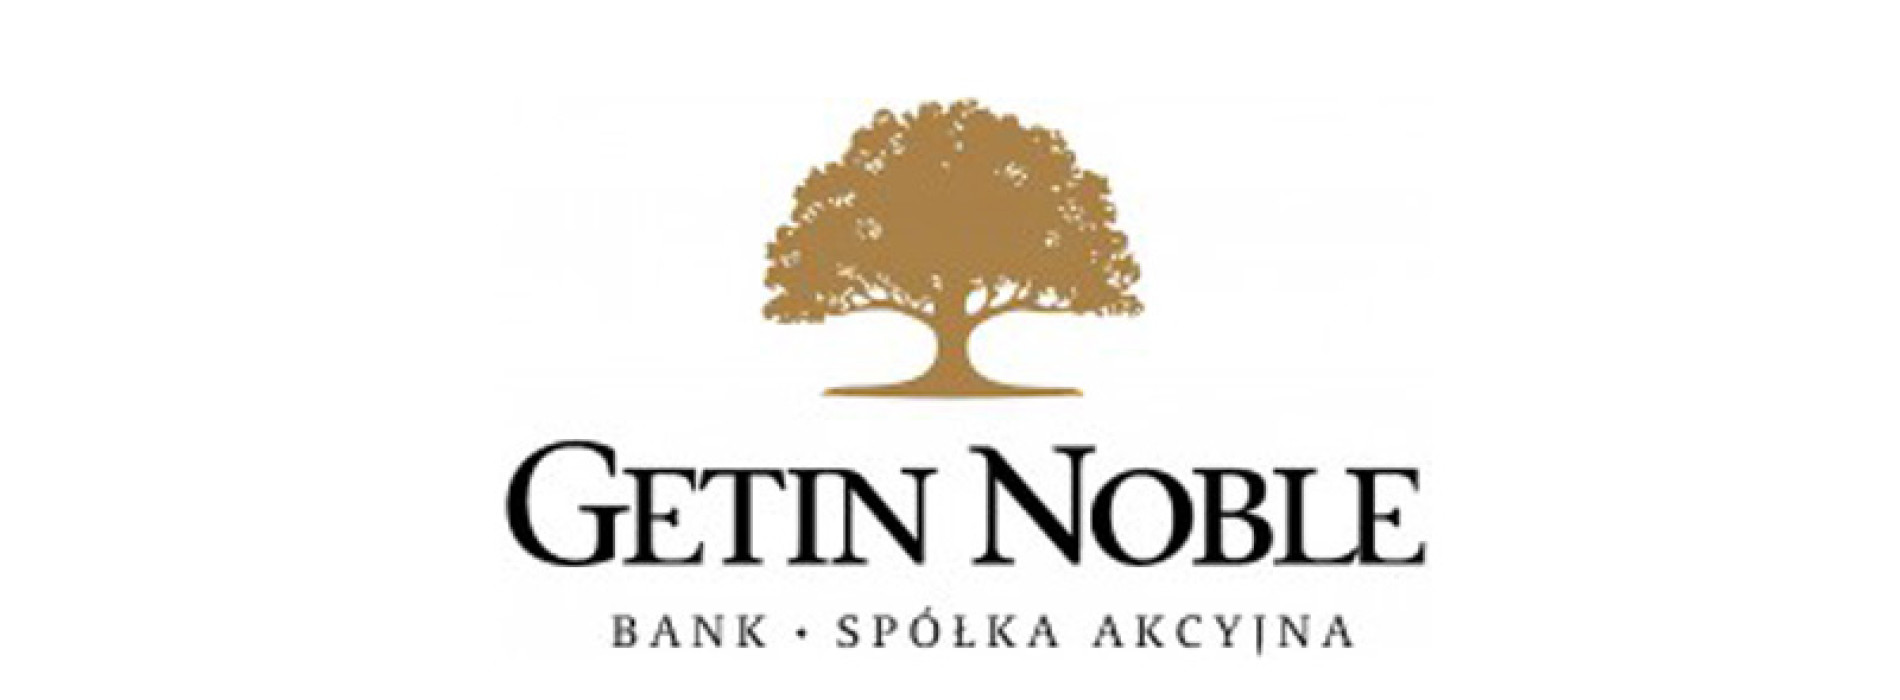 Wyniki Grupy Getin Noble Bank po pierwszym kwartale 2015 roku